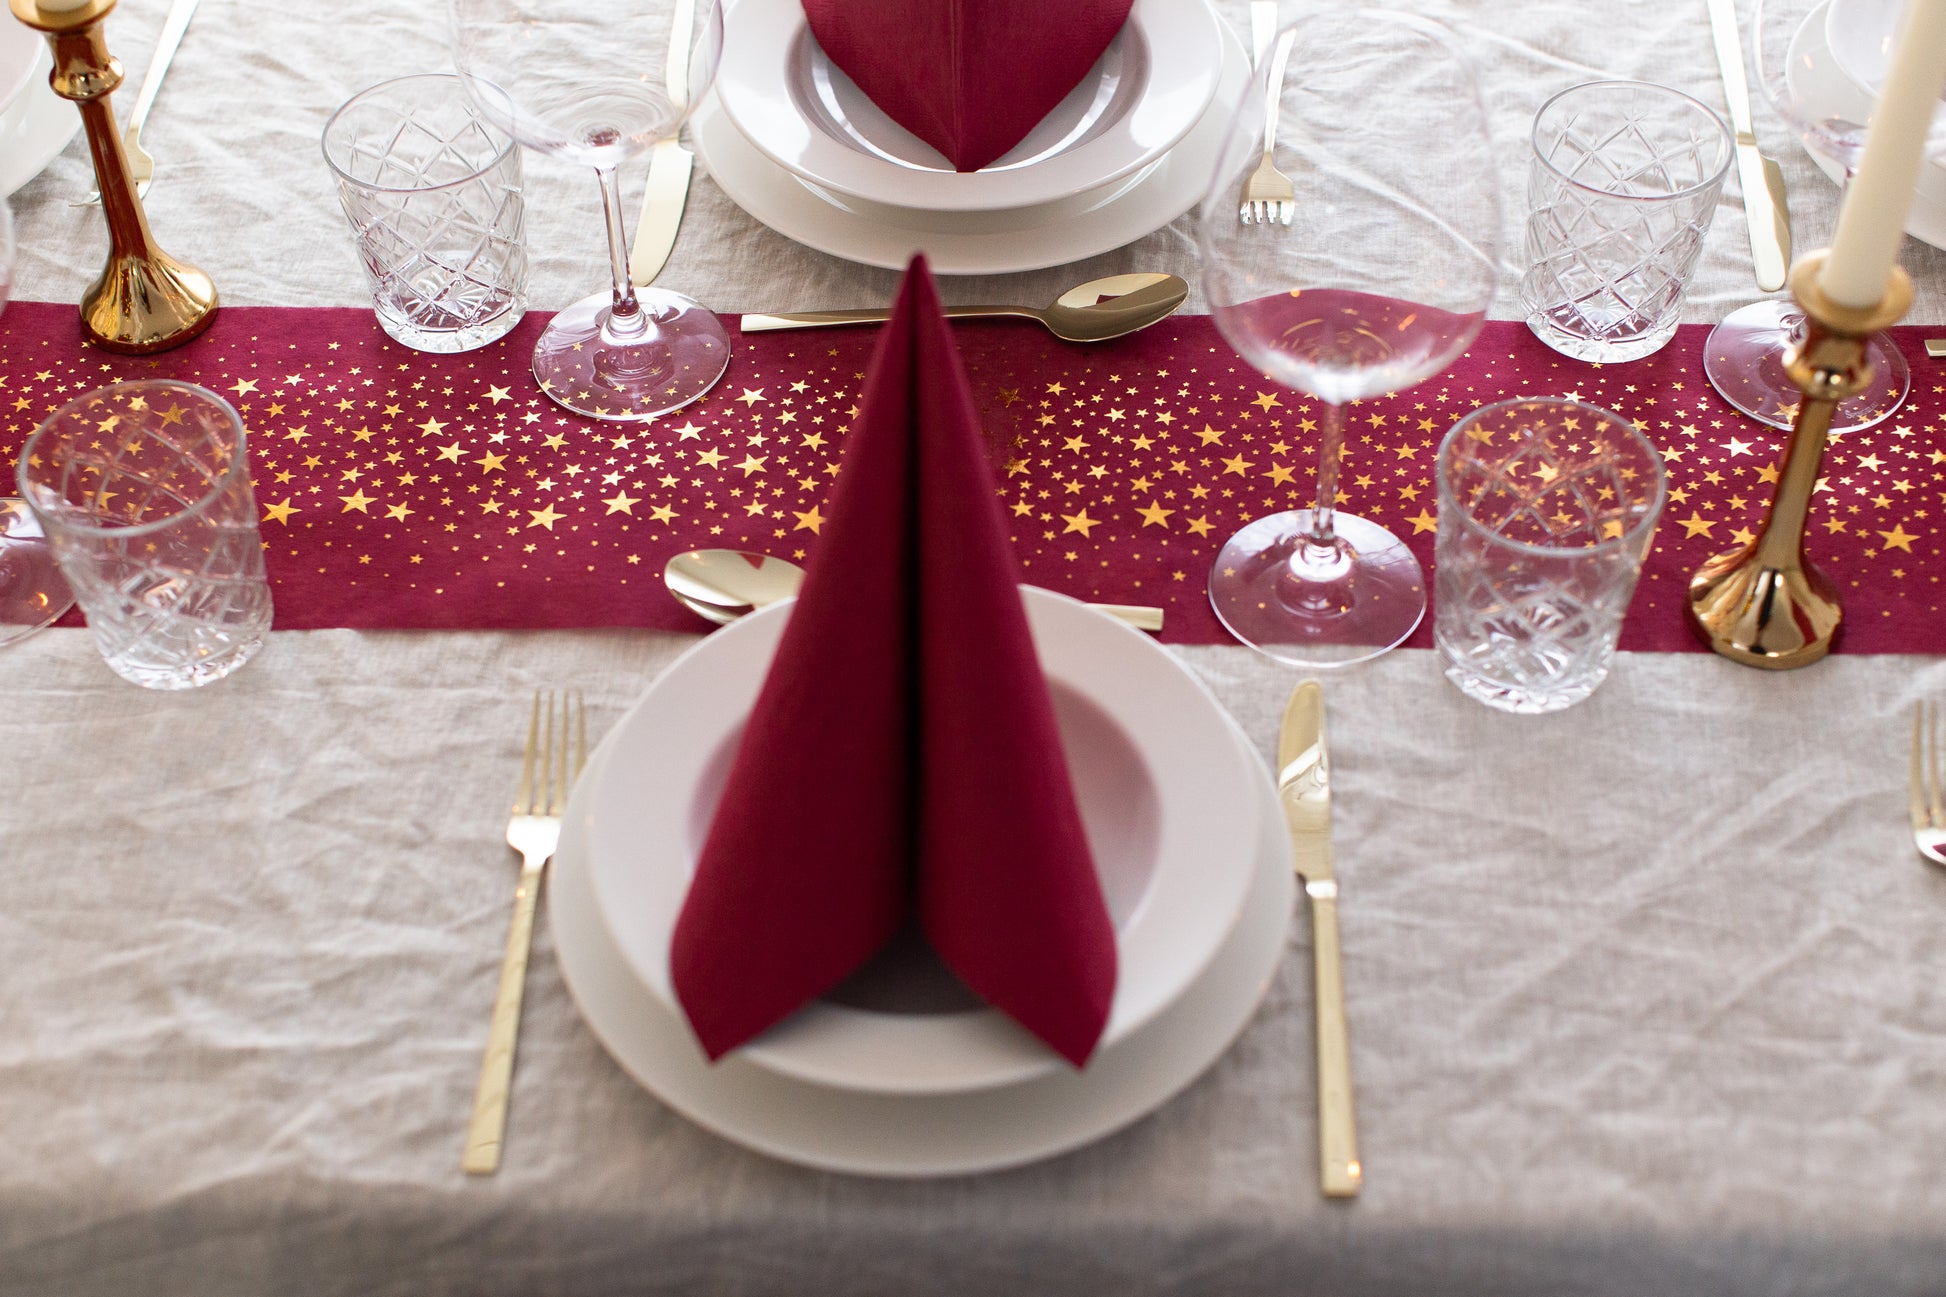 Tischläufer für Weihnachten in Bordeaux Rot mit goldenen Sternen - 100%Mosel